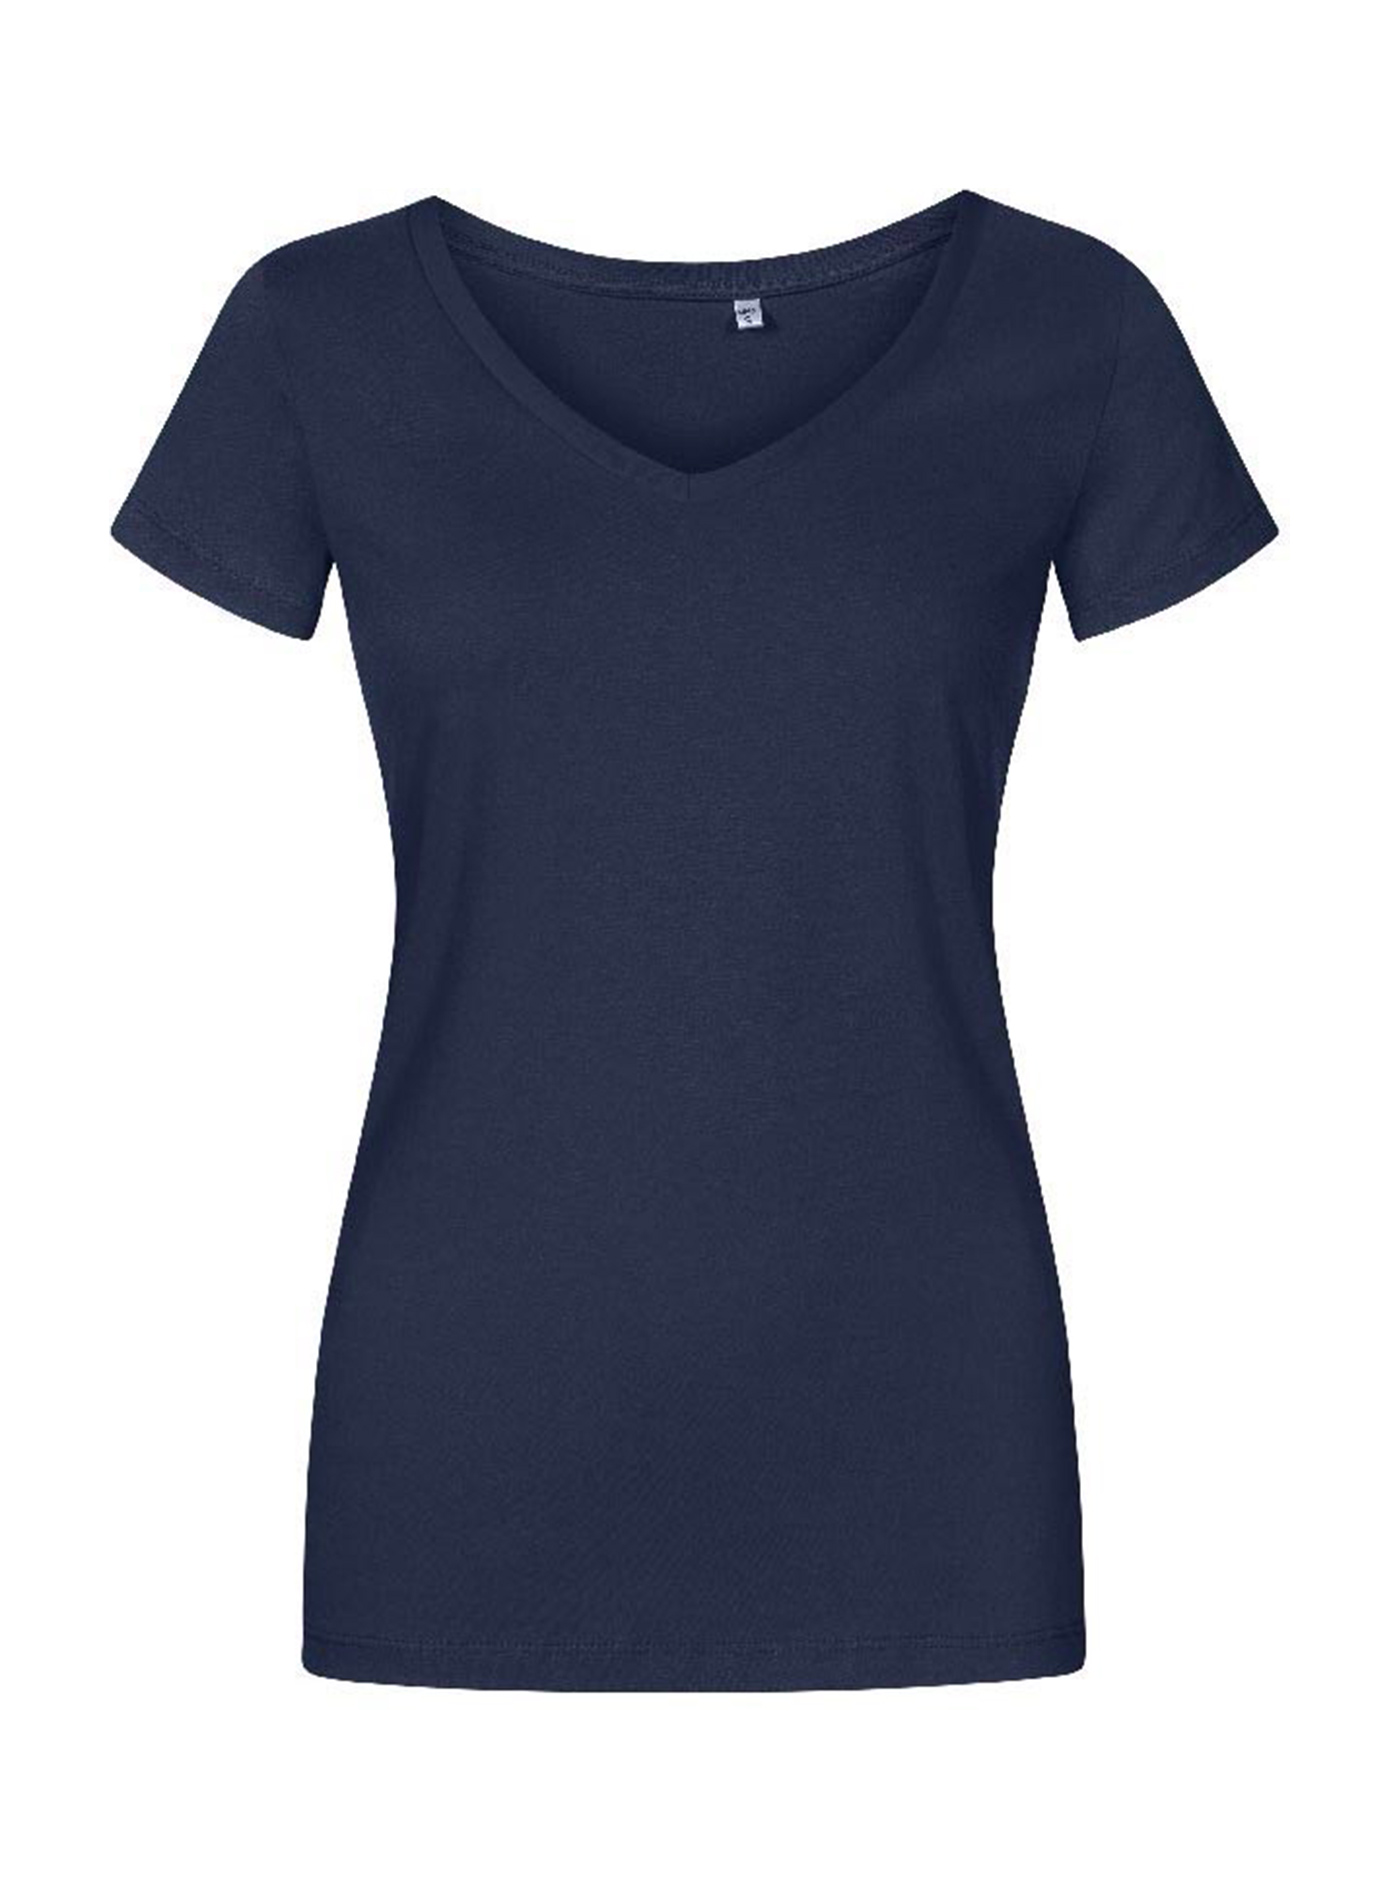 Dámské tričko Promodoro - Námořnická modrá XS